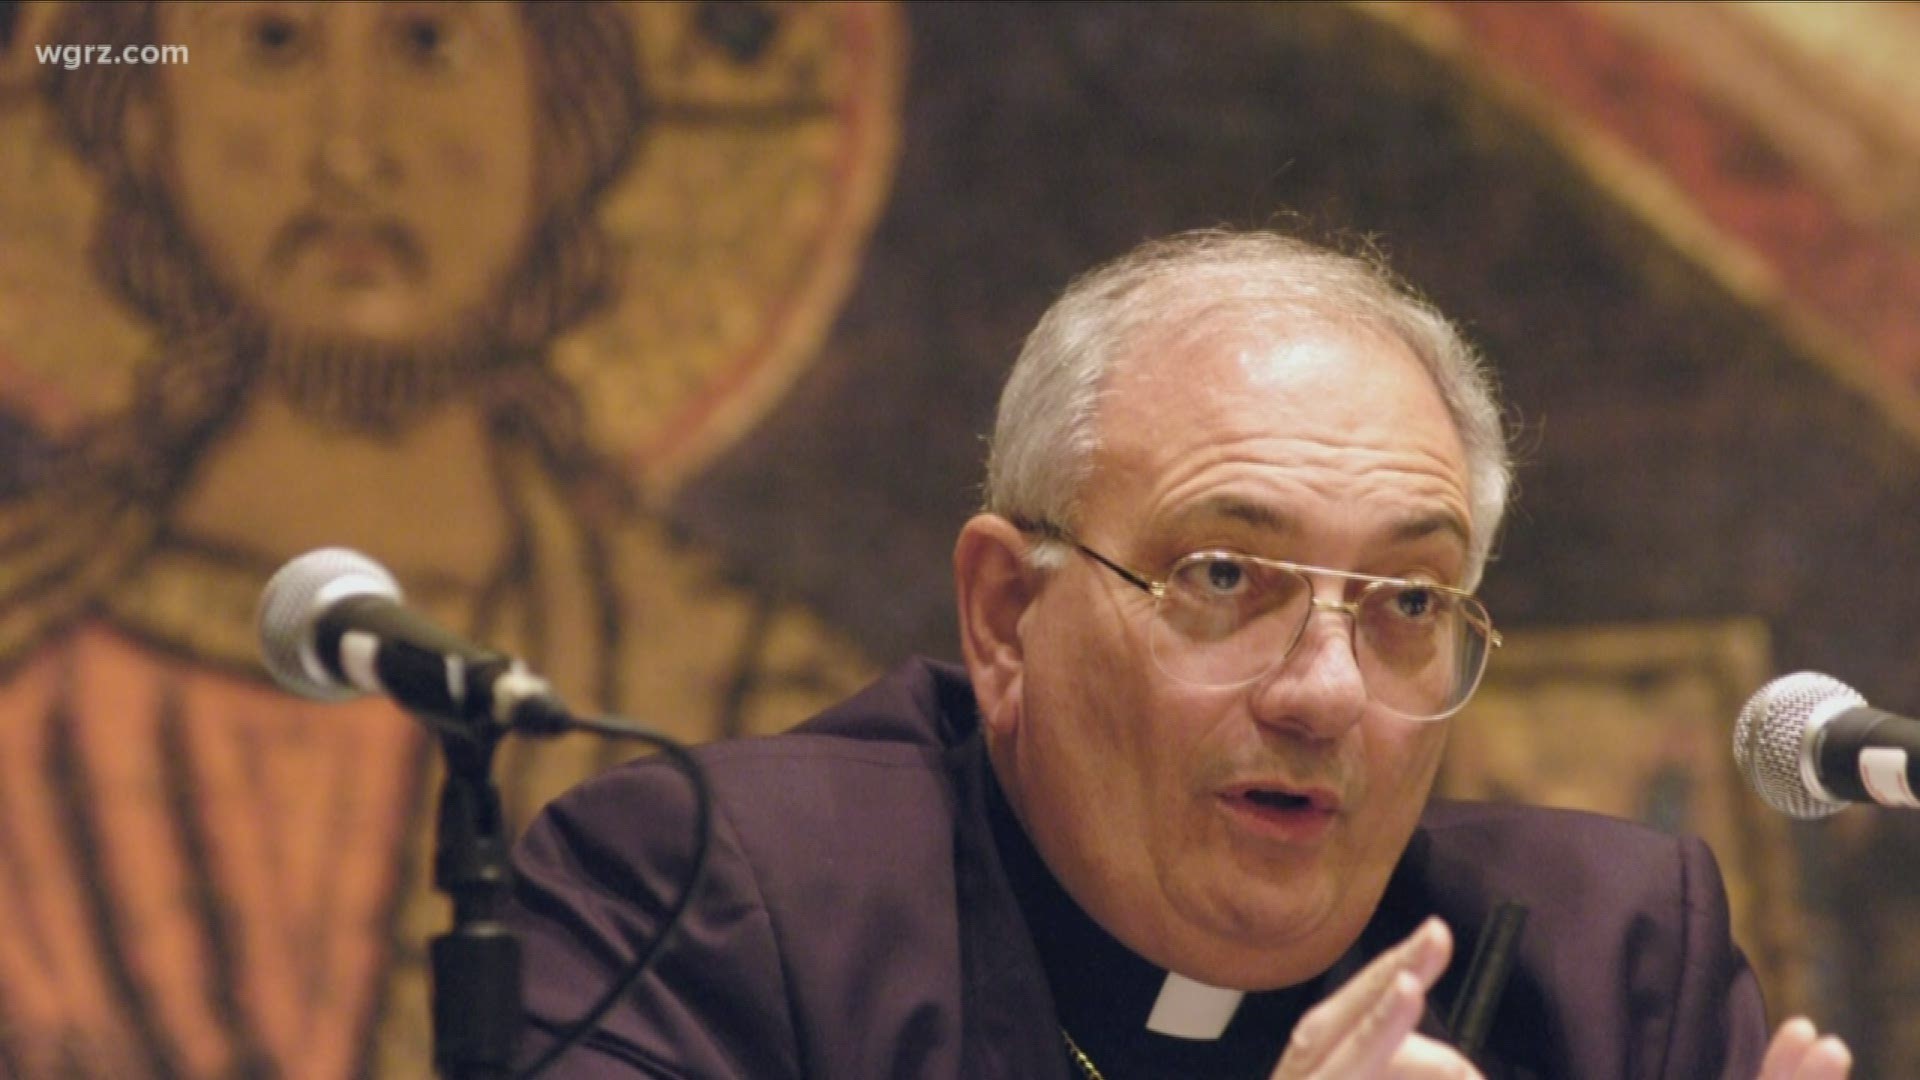 Bishop Nicholas DiMarzio interviewed more than 30 people on his visit here earlier this week.